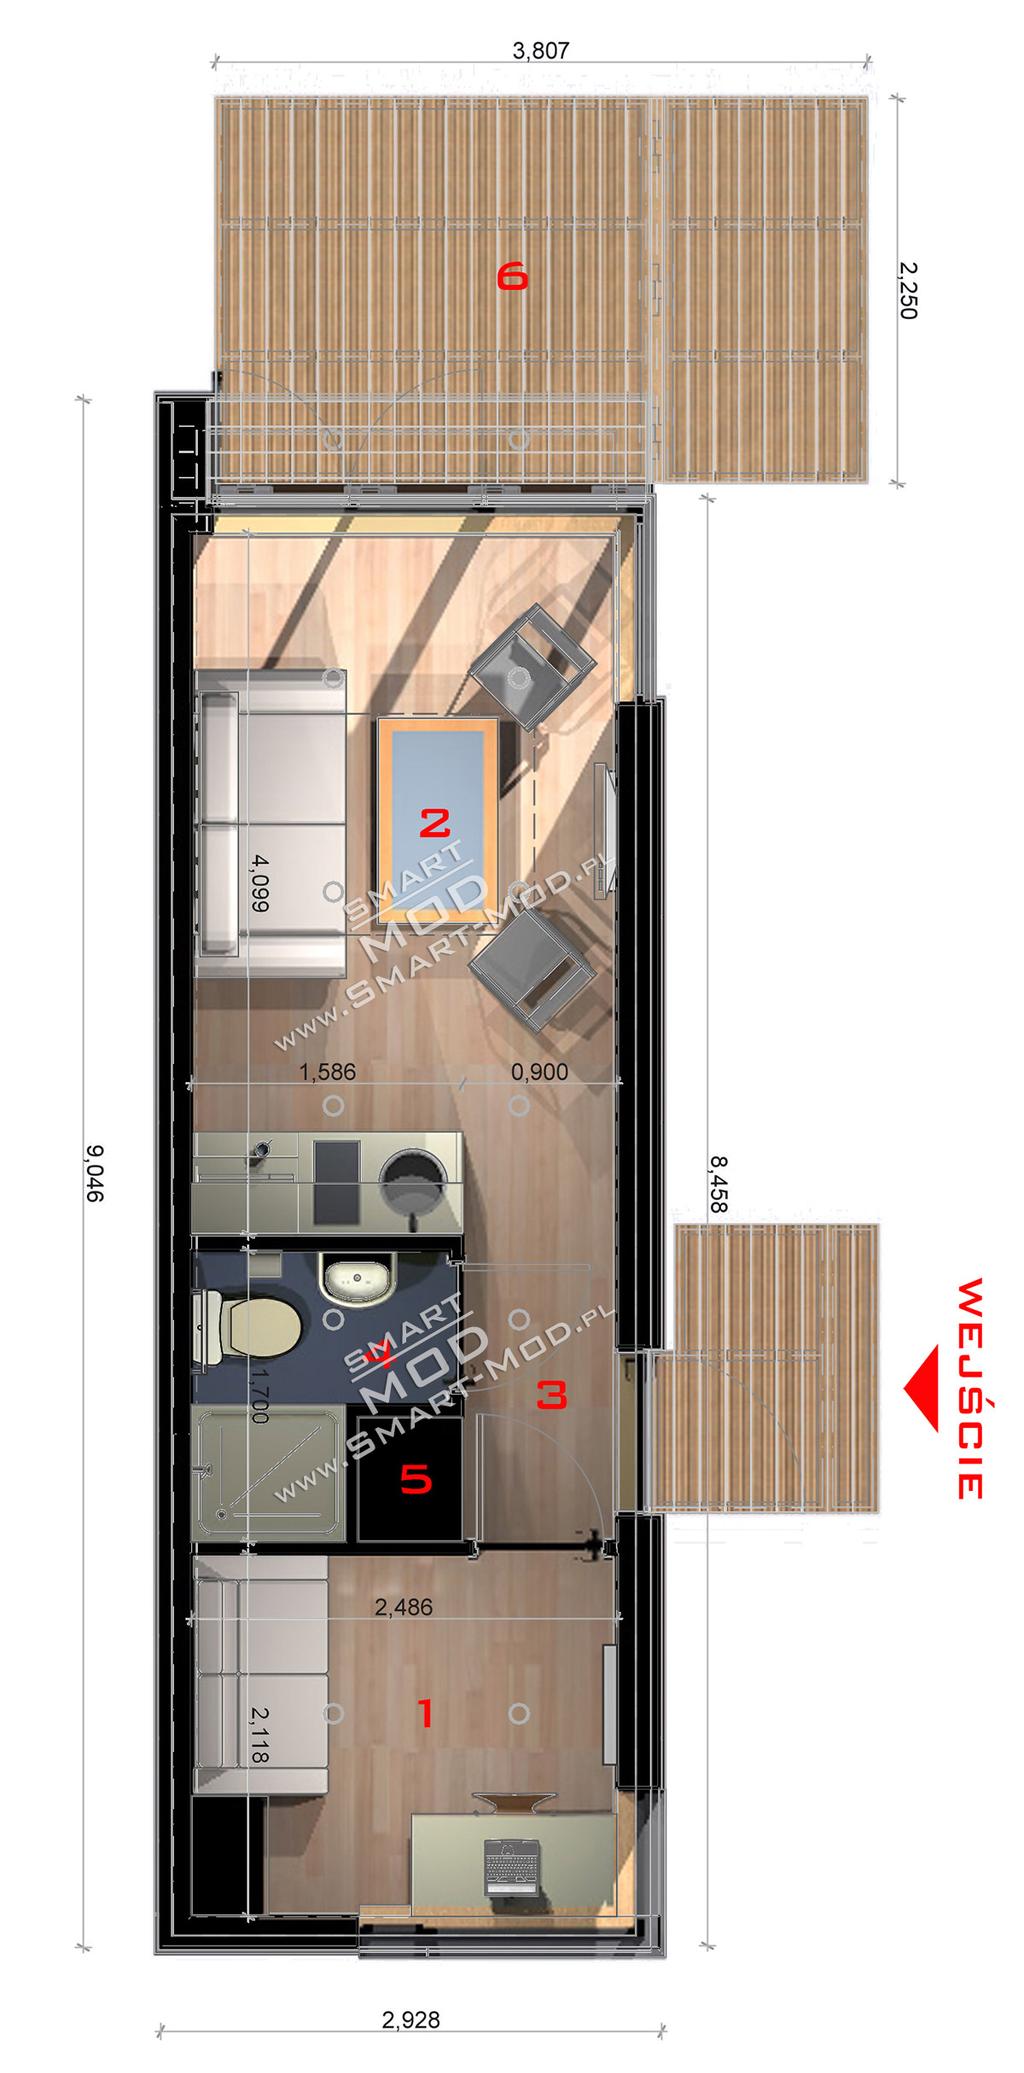 SmartMod Apartament 25 strona 3 Rzut Modułu Apartament 25 Zestawienie pomieszczeń: 1 - Sypialnia - 5m² 2 - Salon z aneksem kuchennym - 10m² 3 - Korytarz wejściowy - 2m² 4